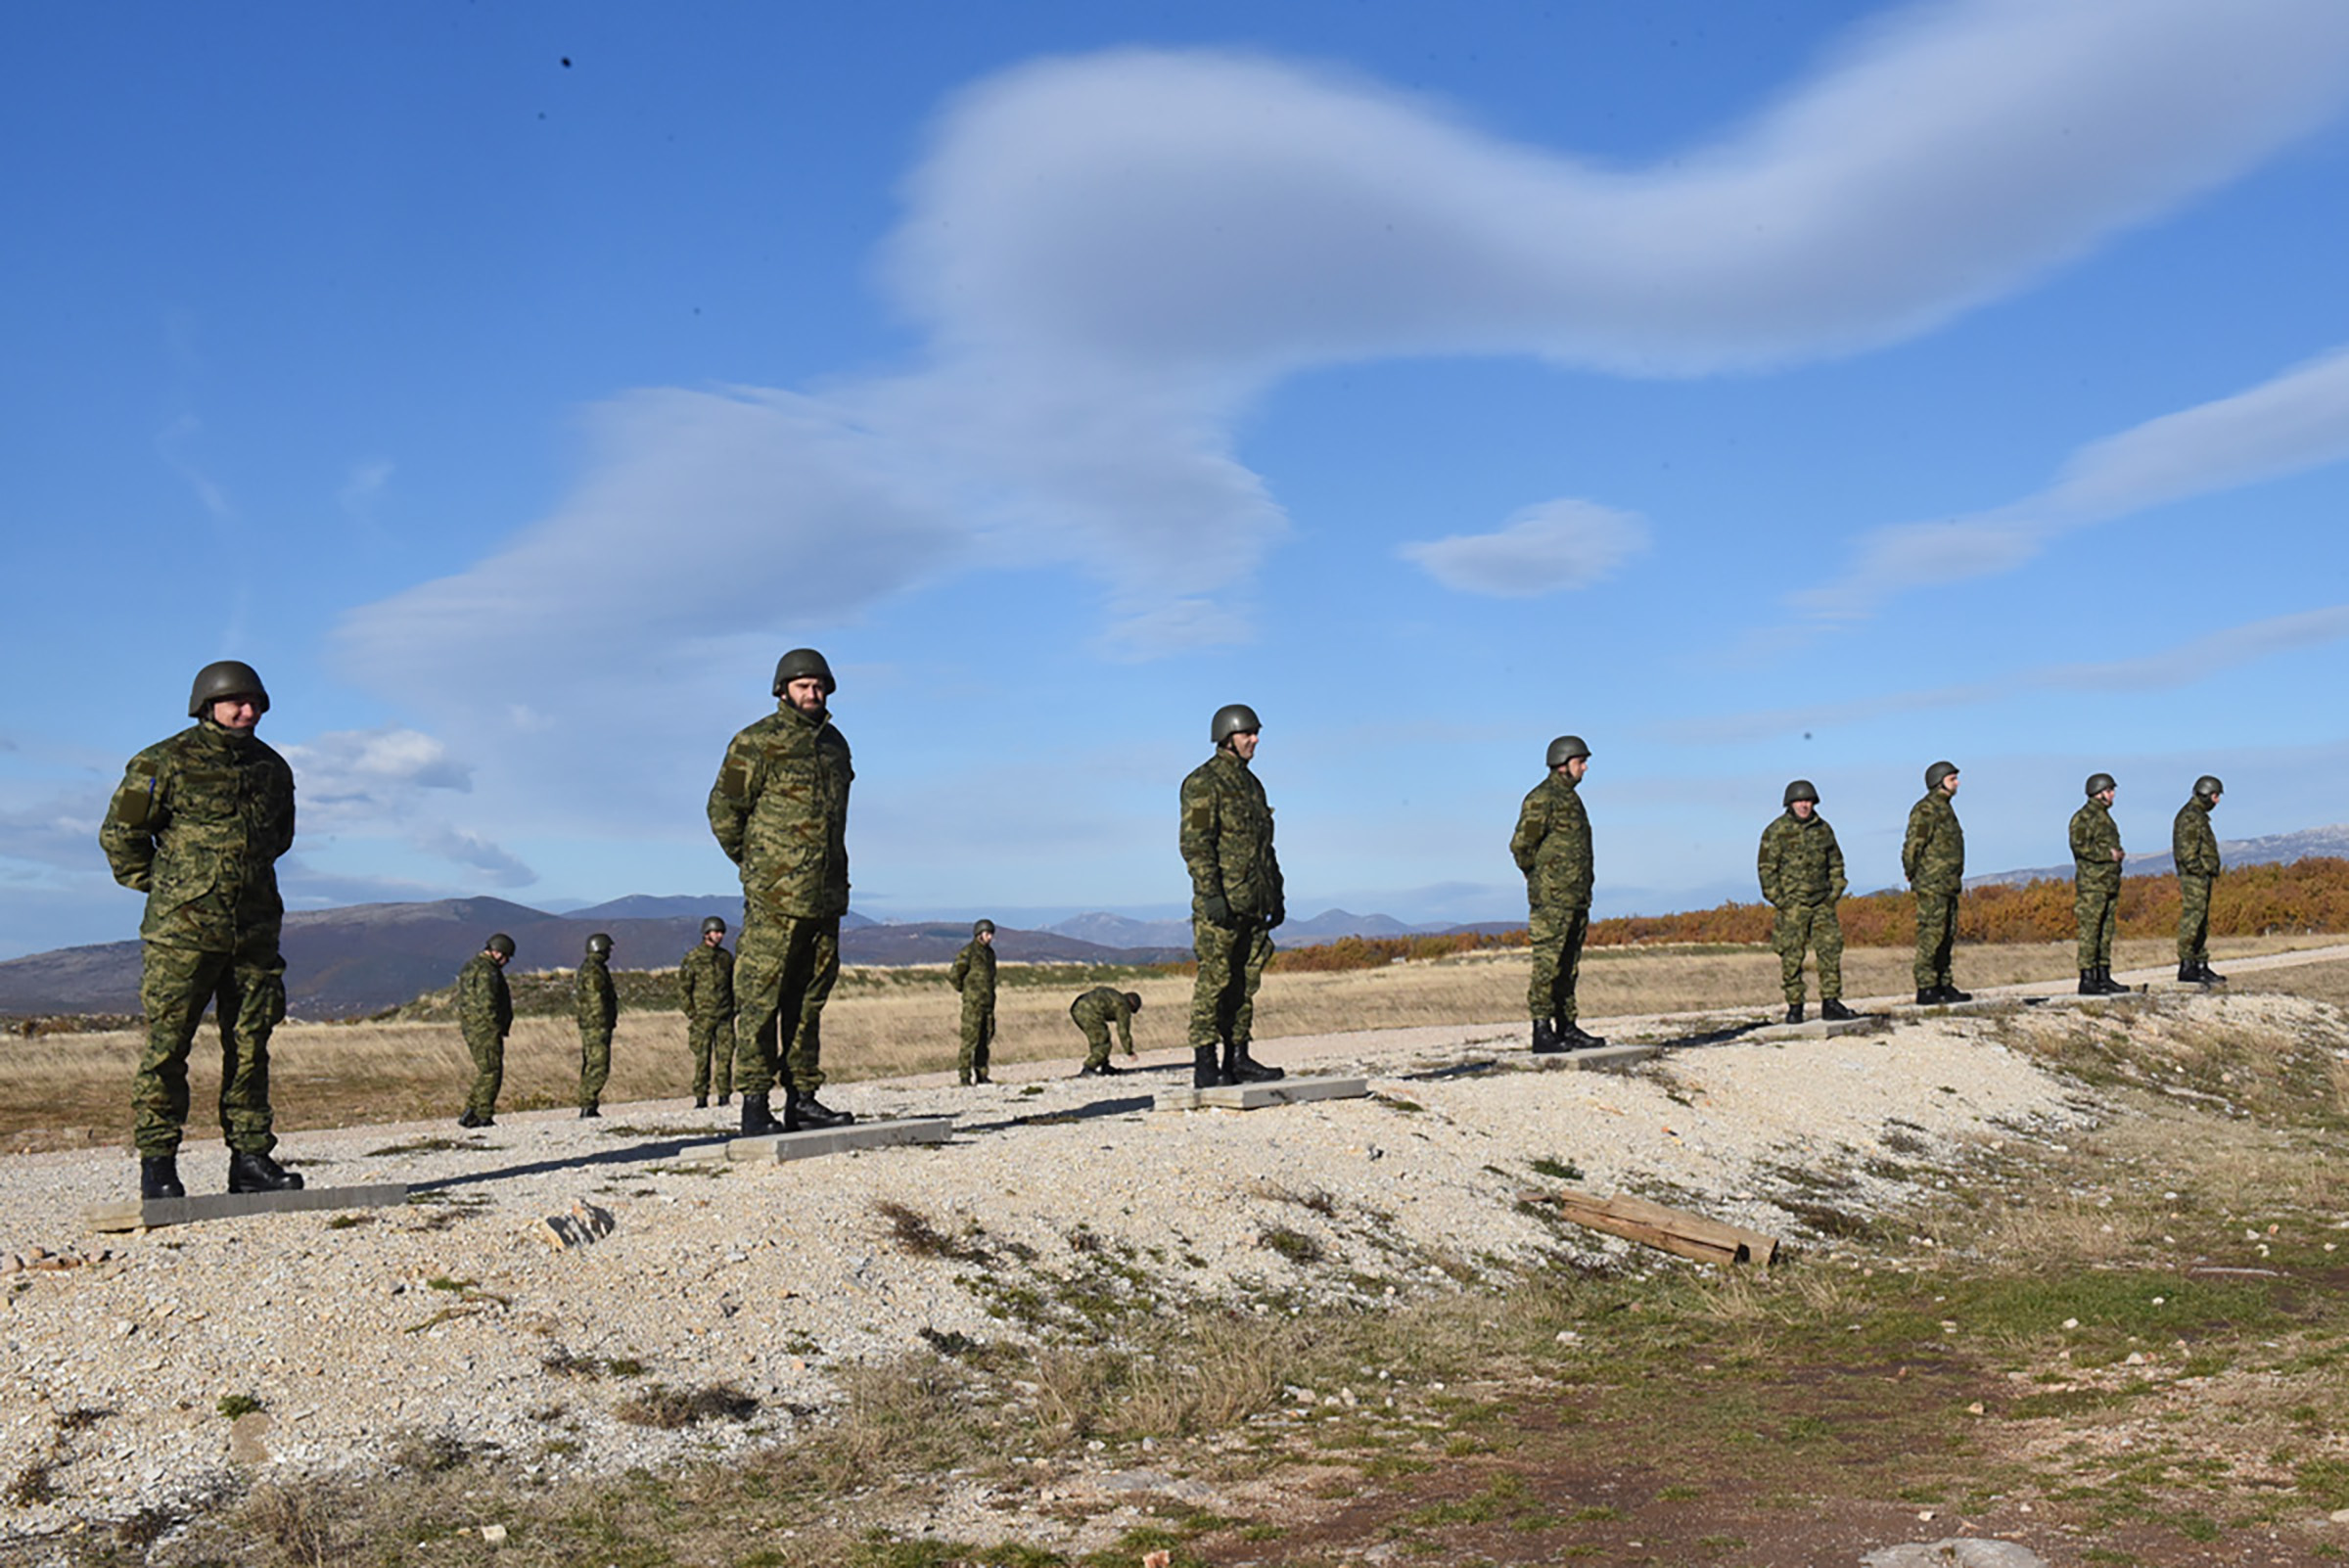 Završena obuka pričuvnika 5. i 6. pješačke pukovnije u Kninu